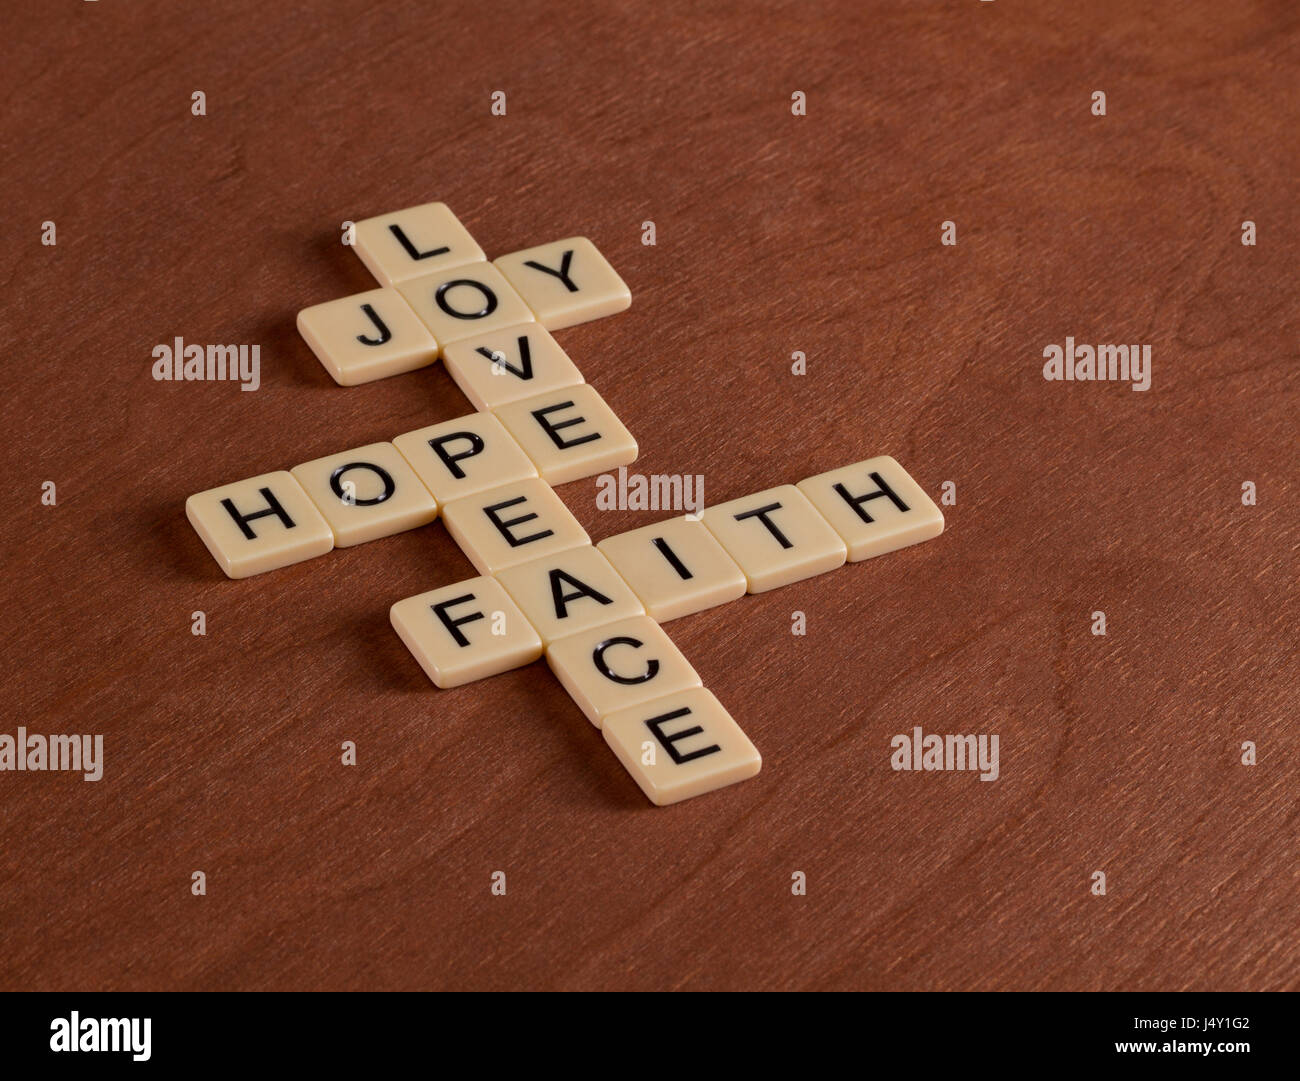 Kreuzworträtsel mit Worten glaube, Hoffnung, Liebe. Glaubens-Konzept. Elfenbein Fliesen mit Großbuchstaben auf Mahagoni Brett. Stockfoto